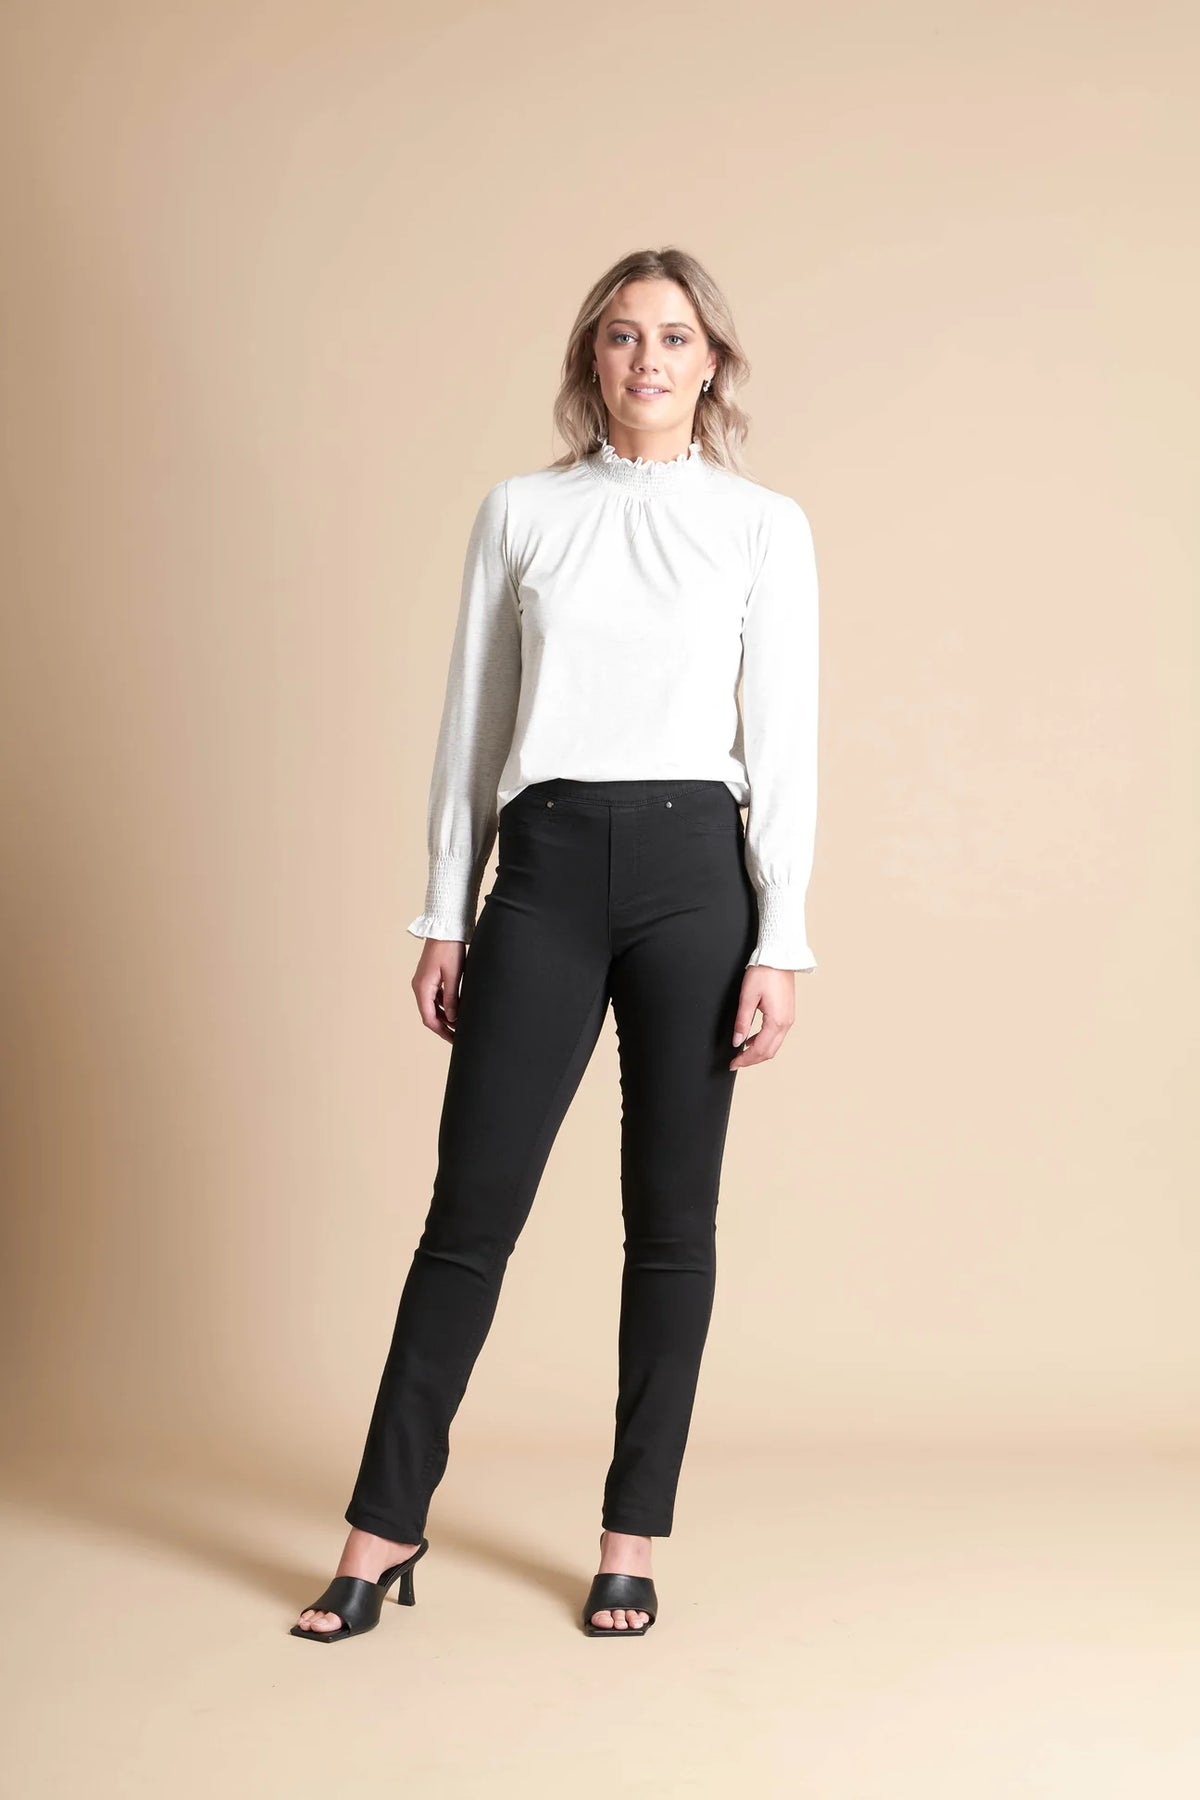 California Stretch Pull On Jeans- MACJAYS Pant 8 BLACK NZ LUMA